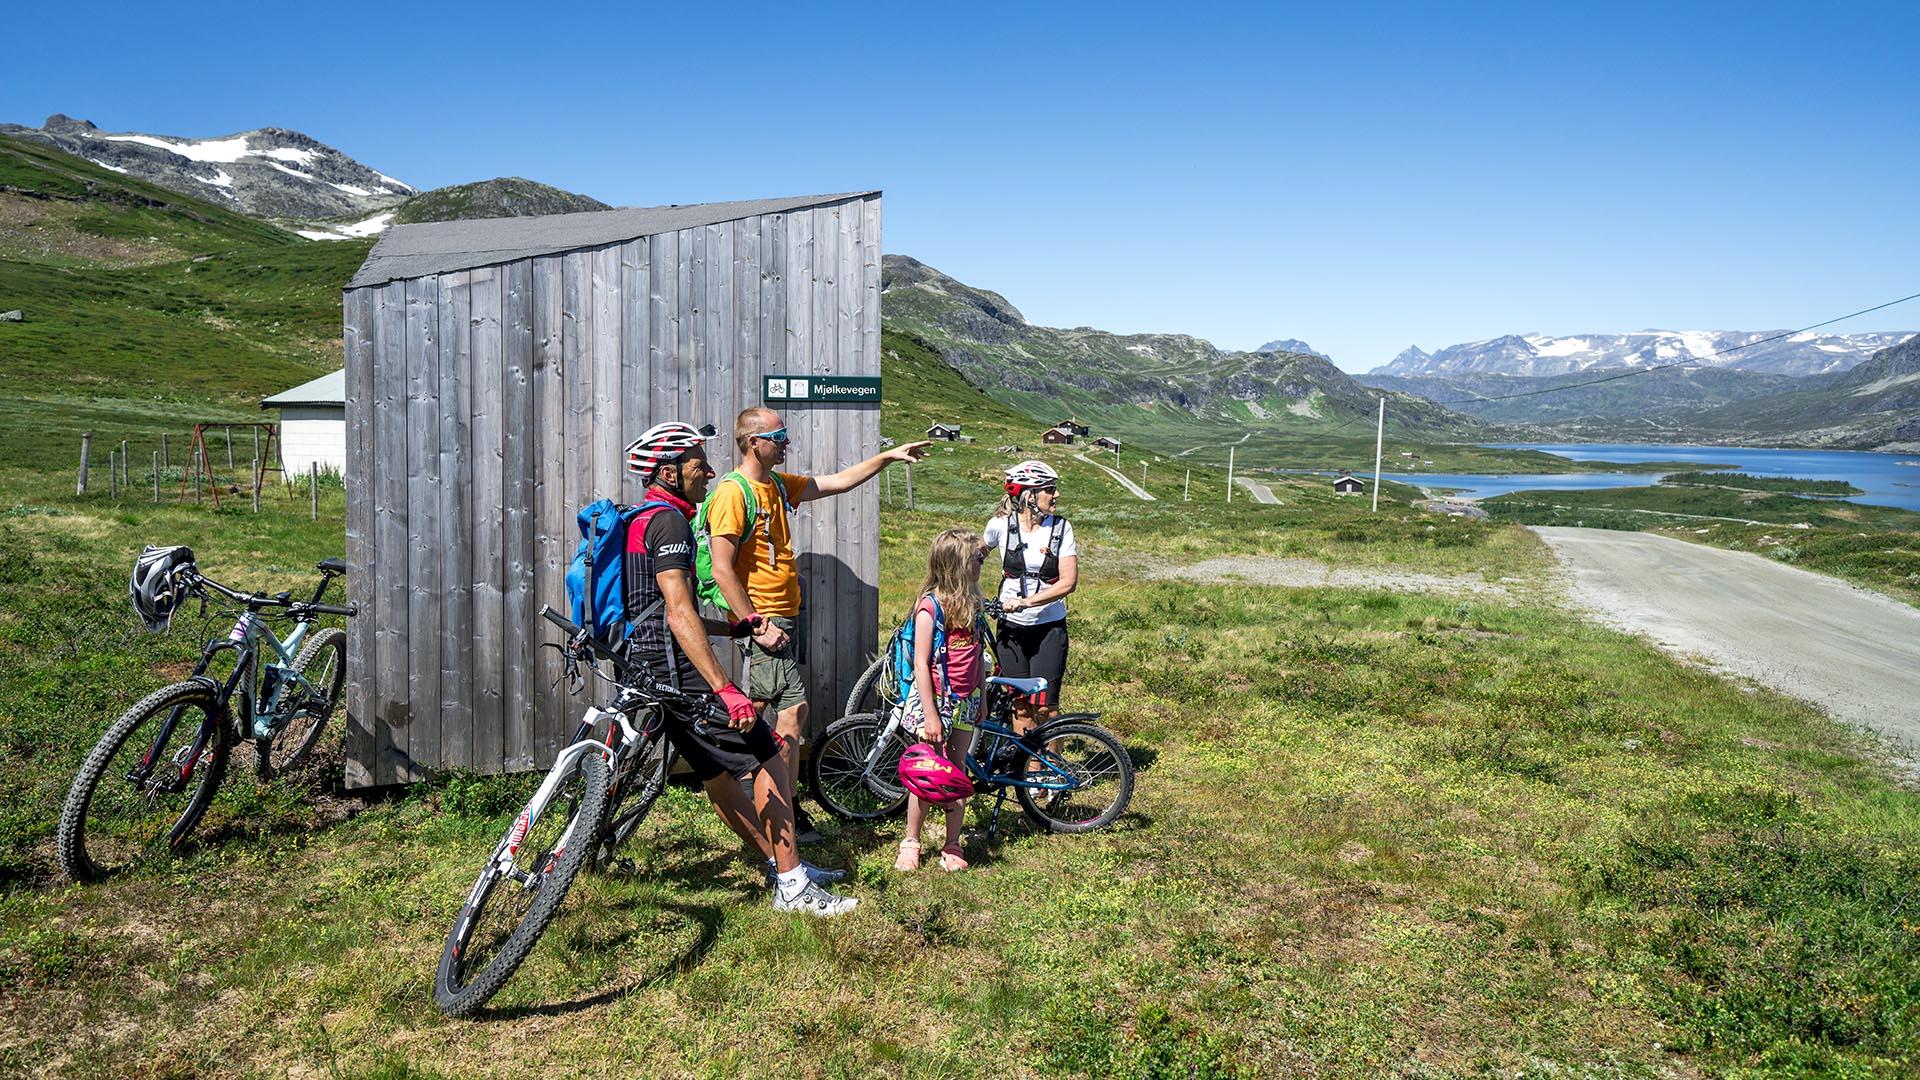 Radfahrer machen eine Pause an einem Rastunterstand entlang eines Almweges im Gebirge mit Aussicht zu einem See und hohen Gipfeln.